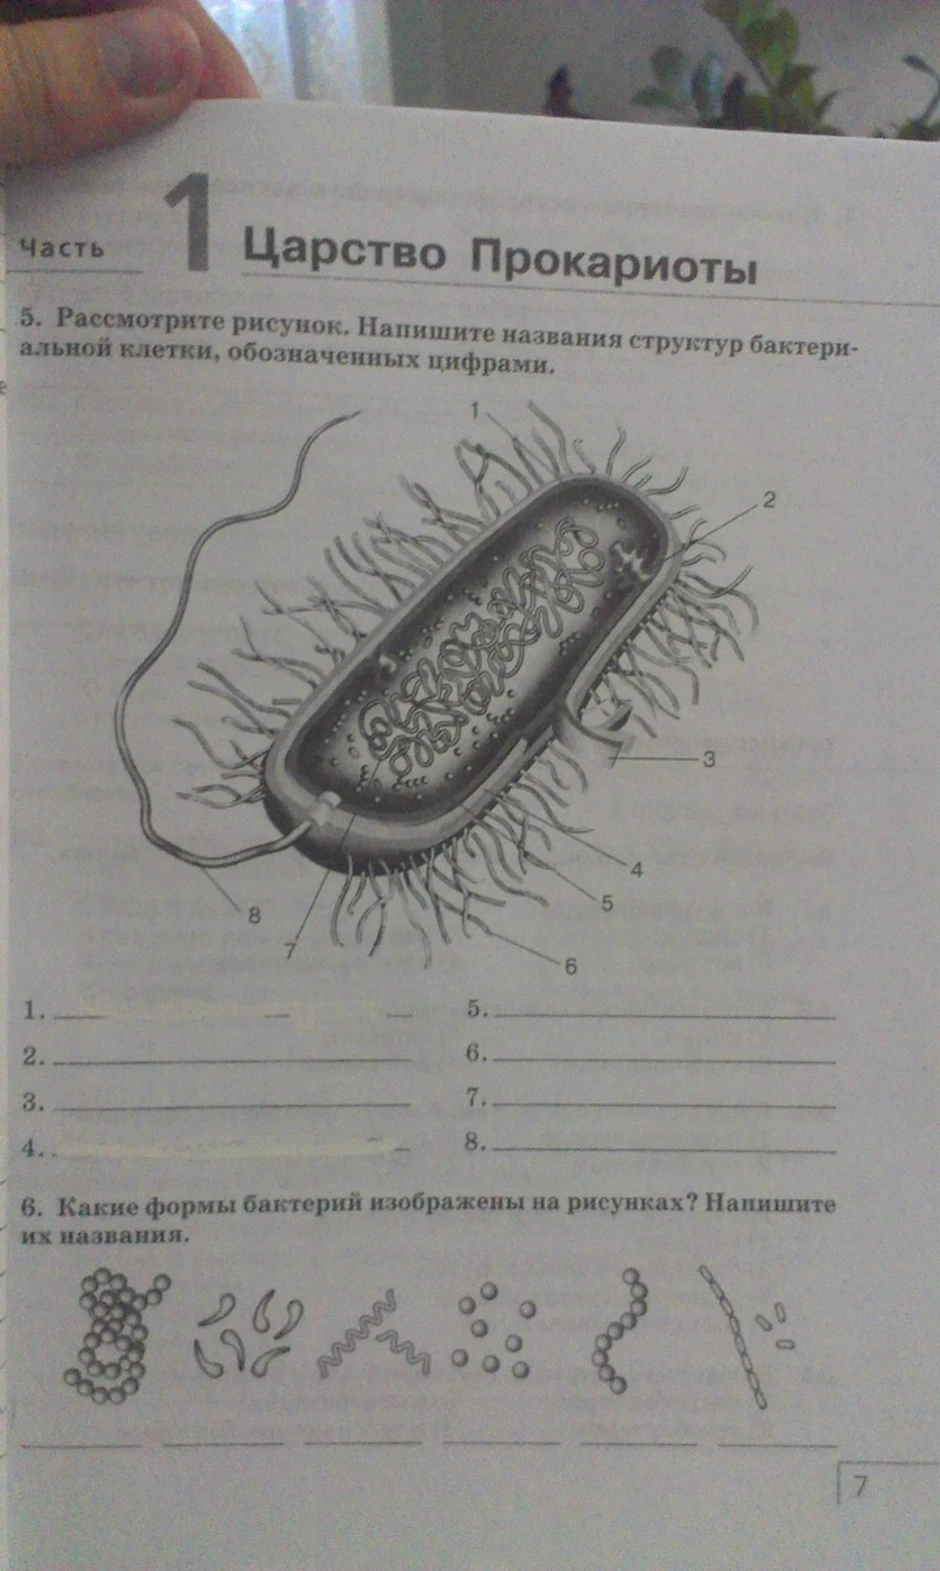 Биология 5 класс 2 из изображенных. Строение бактерии 5 класс биология. Части бактериальной клетки биология 6 кл. Рассмотрите рисунок строение бактериальной клетки. Названия структур бактериальной клетки обозначенных цифрами.